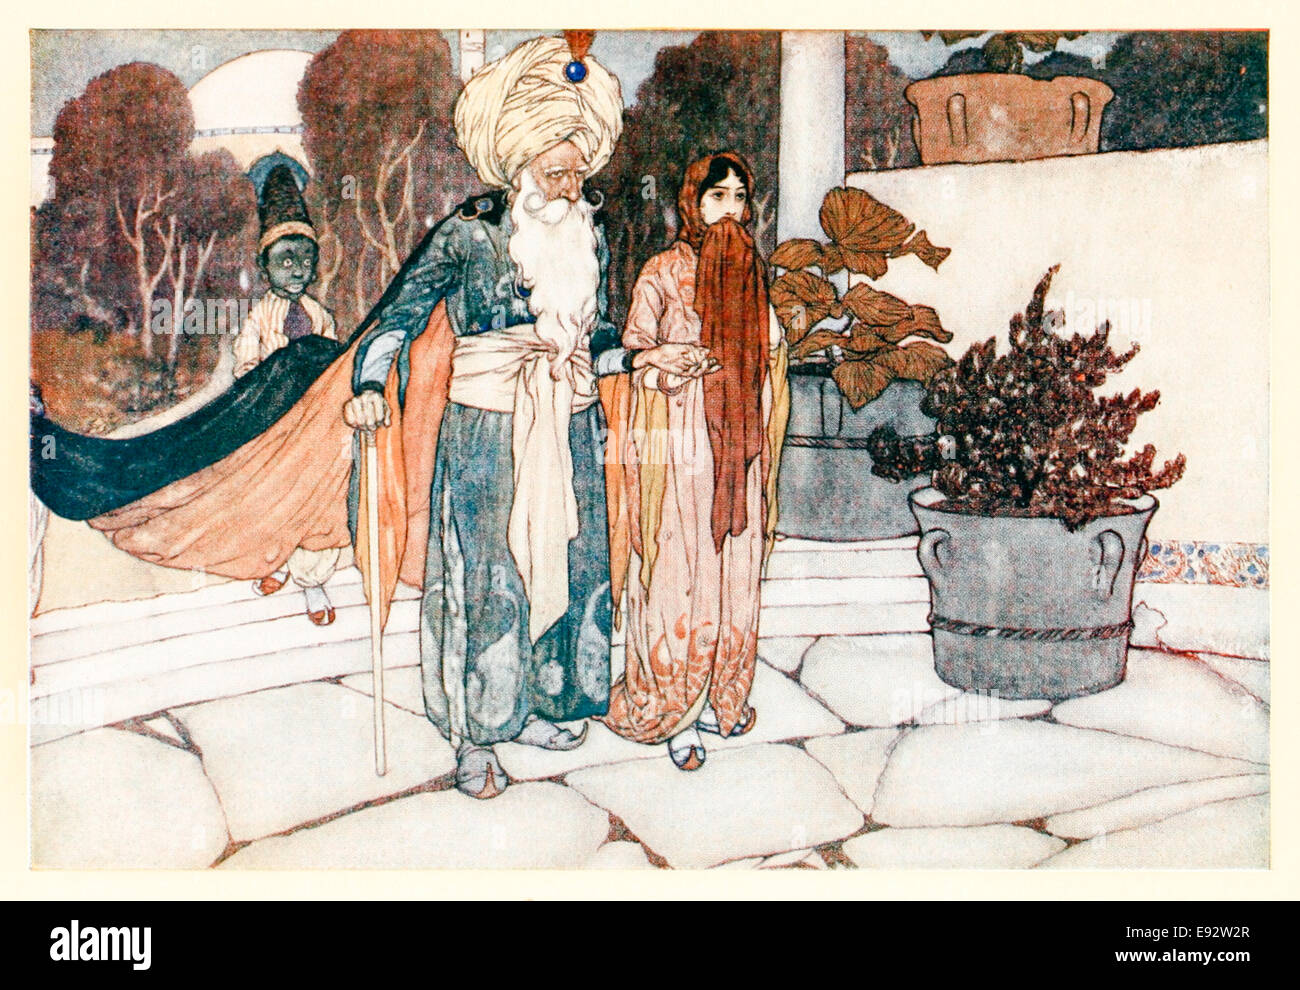 Le roi d'Harran conduit la princesse de Deryabar - Edmund Dulac illustration de 'l'histoire de la princesse de Deryabar' dans 'Stories de l'Arabian Nights'. Voir la description pour plus d'informations Banque D'Images